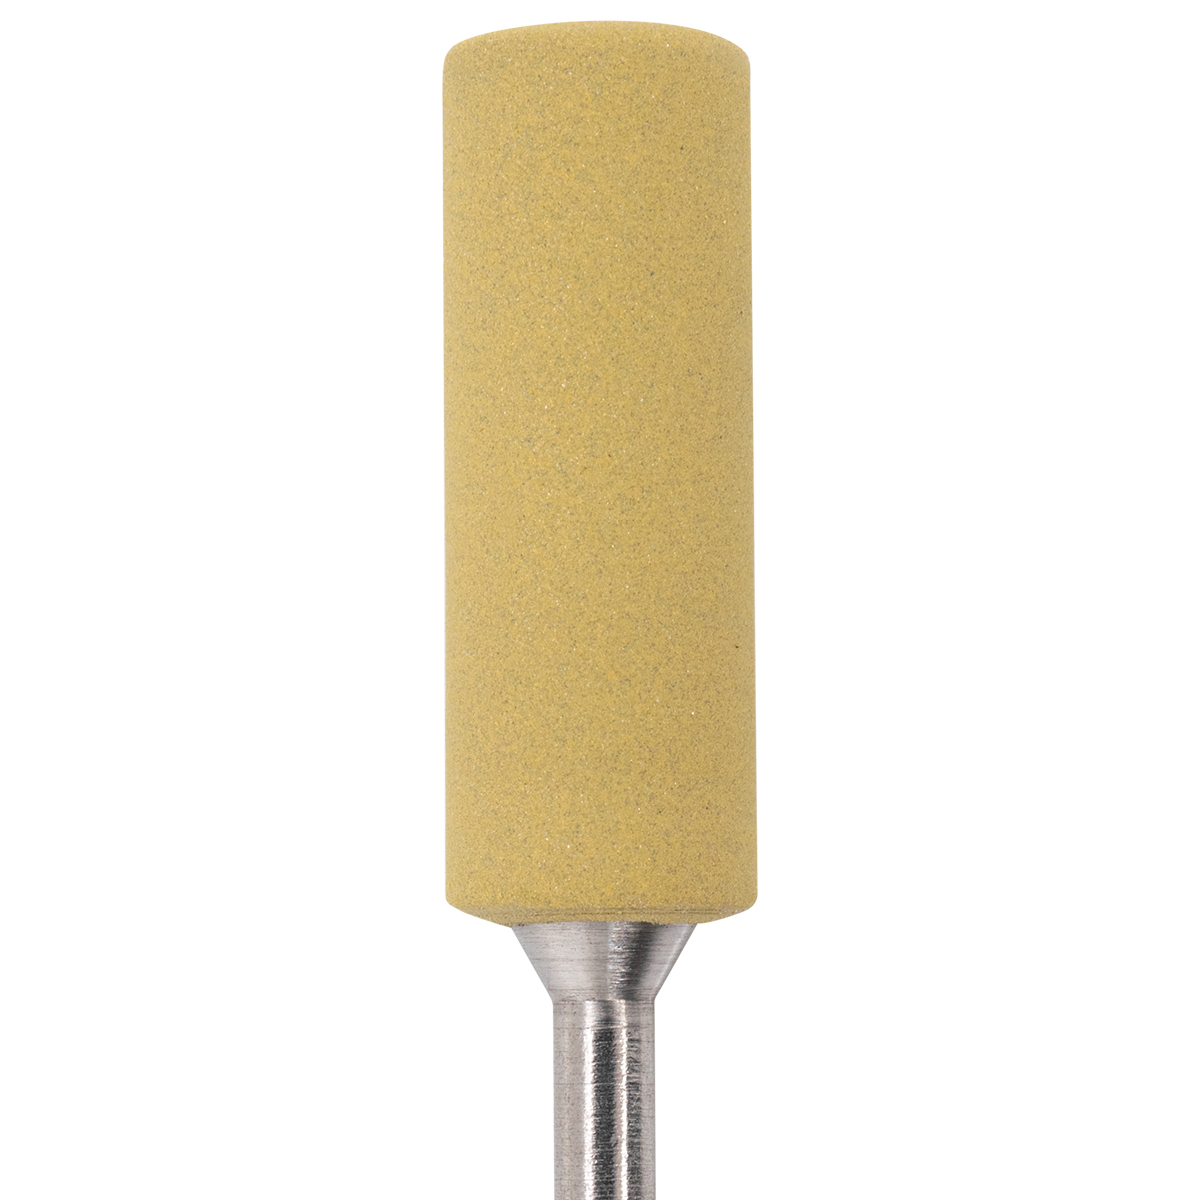 6 Meulette Exa Technique, jaune, 0653HP Grain fin - Ø 7,0/20,0 mm, cylindrique